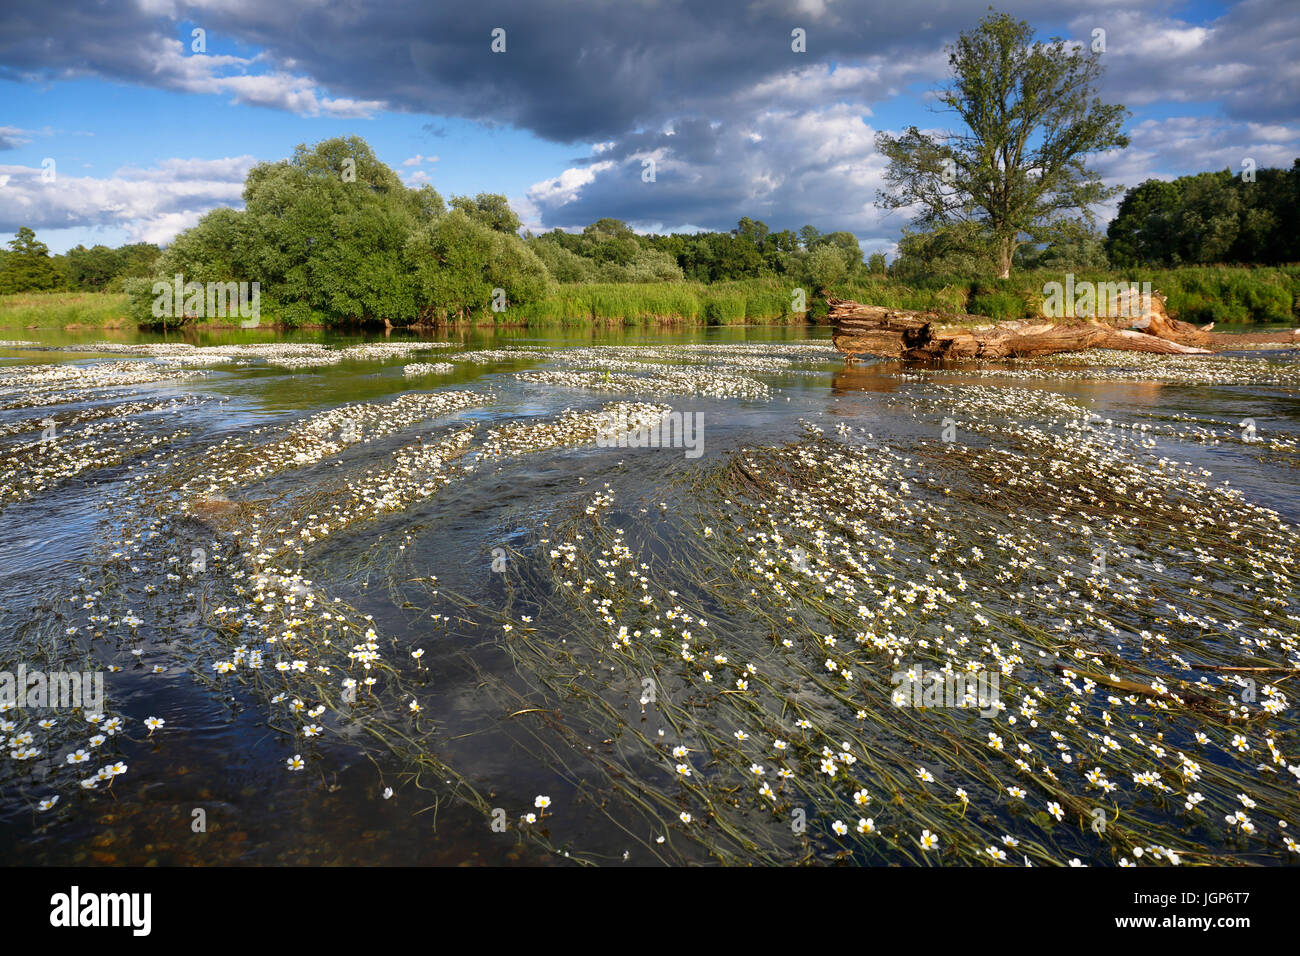 L'eau de rivière-crowfoot (Ranunculus fluitans) du bassin de la rivière, près de Dessau, au milieu de la réserve de biosphère de l'Elbe, Saxe-Anhalt, Allemagne Banque D'Images